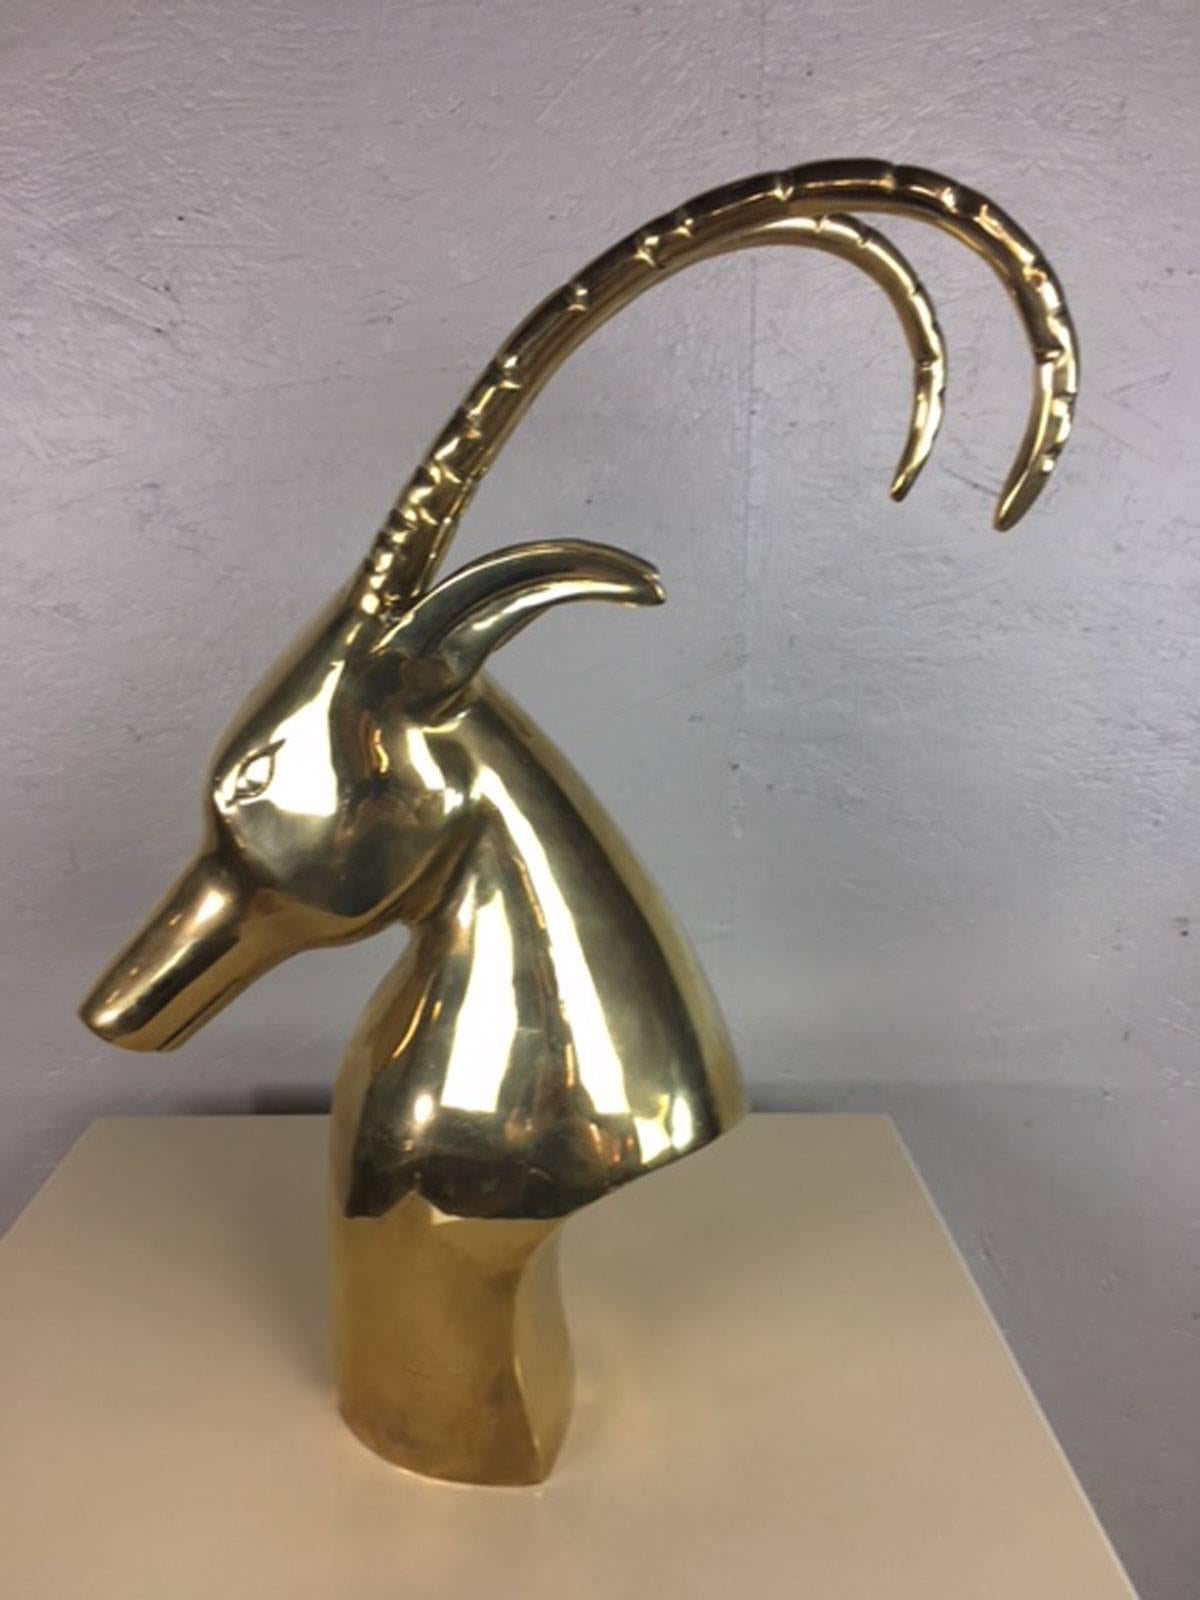 Unique antelope head sculpture in brass. Artist unknown.